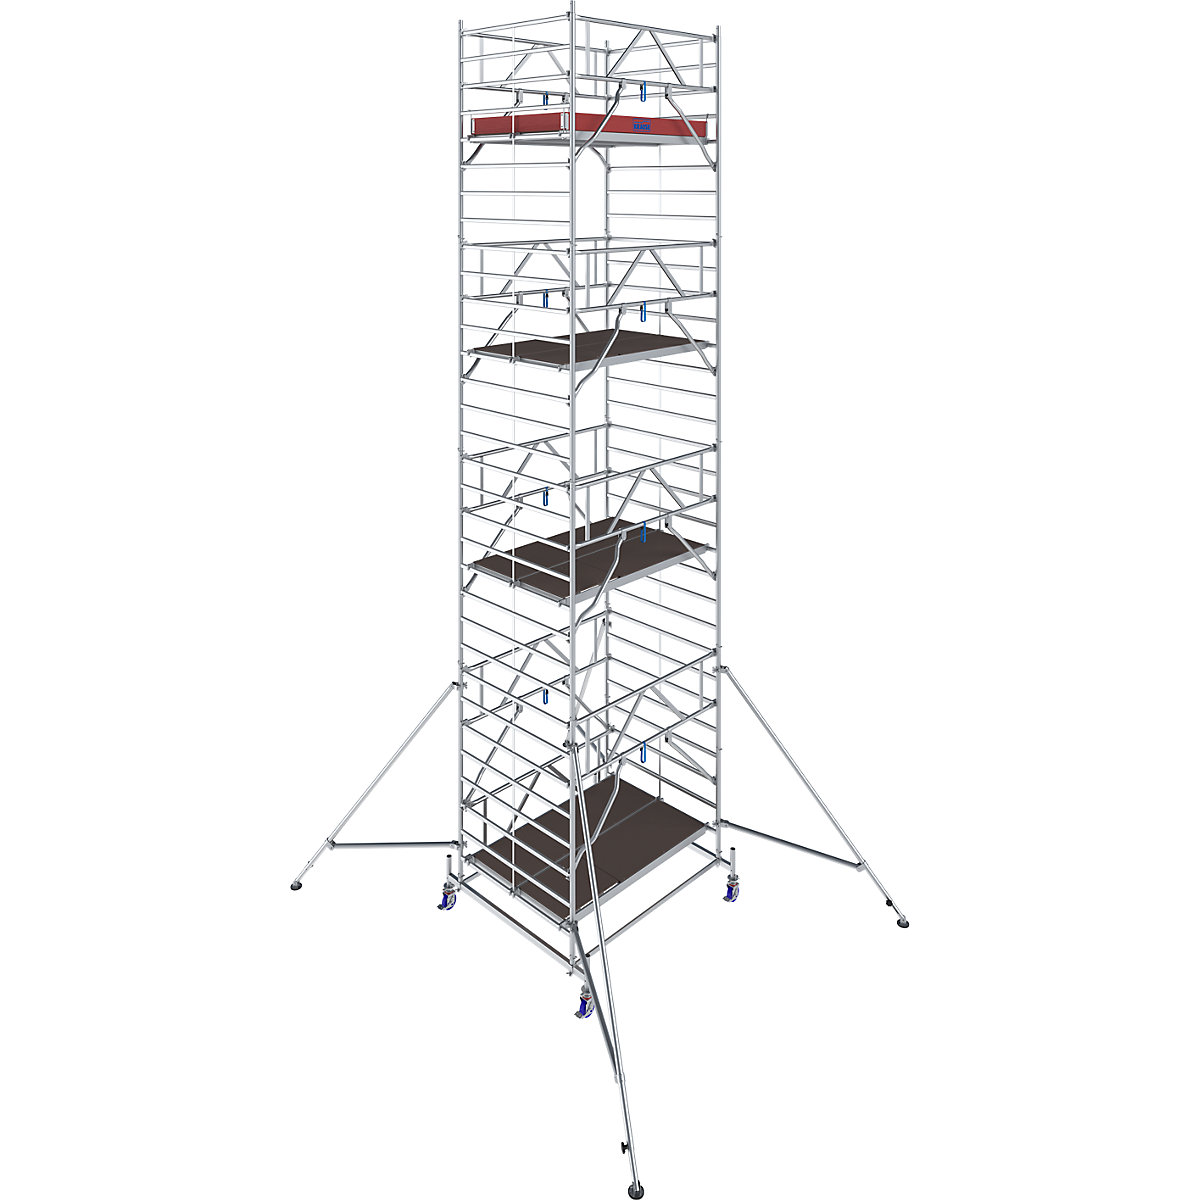 Fahrgerüst STABILO Serie 50 KRAUSE, Plattformlänge 2 m, Arbeitshöhe 9,40 m-10